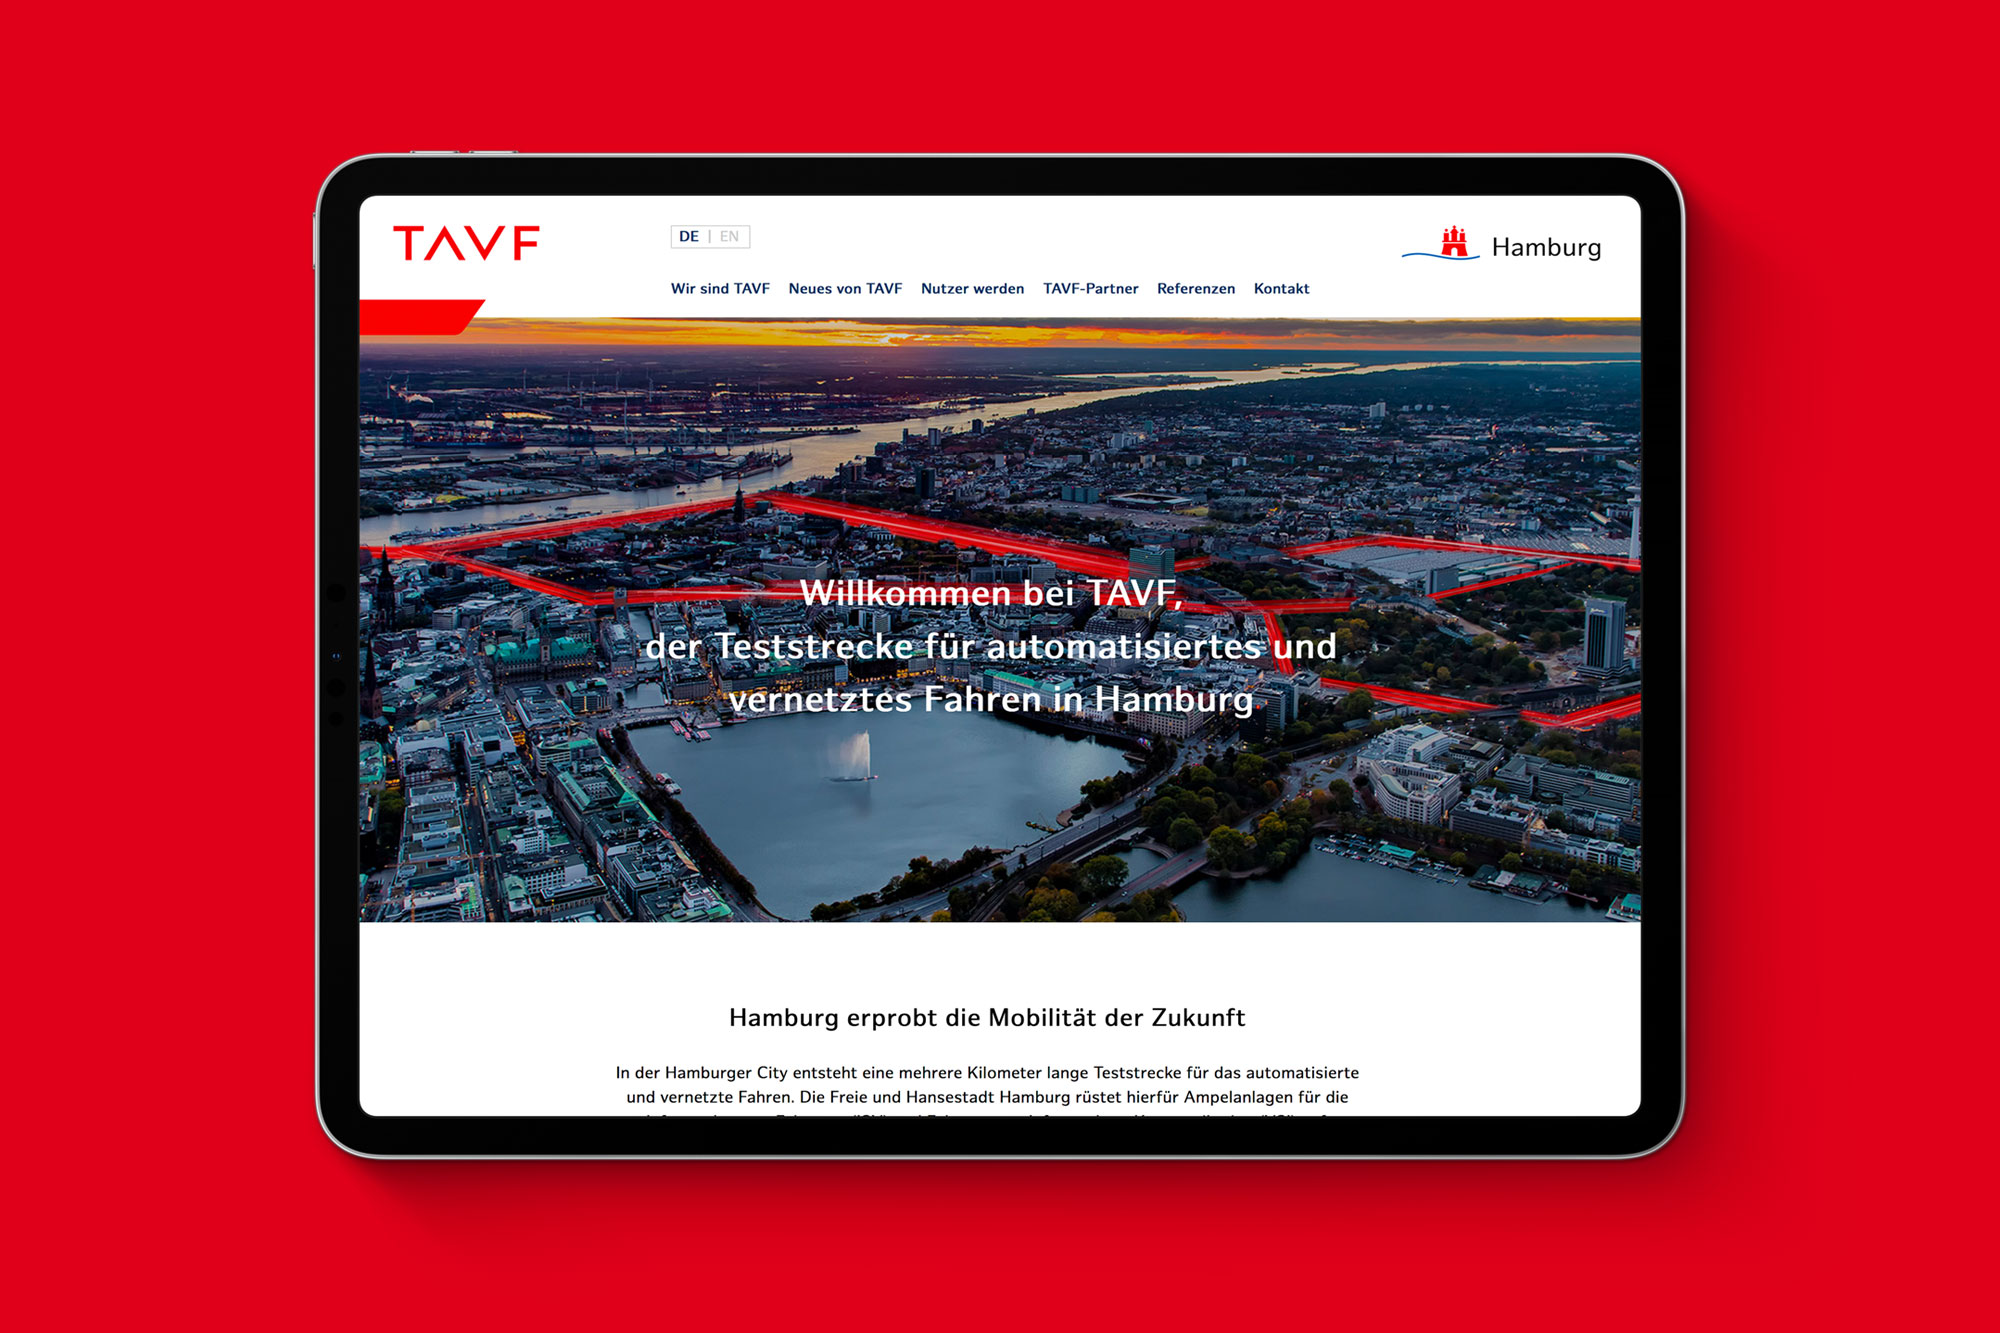 iPad auf rotem Hintergrund zeigt die Website für TAVF – die Teststrecke für automatisiertes und vernetztes Fahren in Hamburg